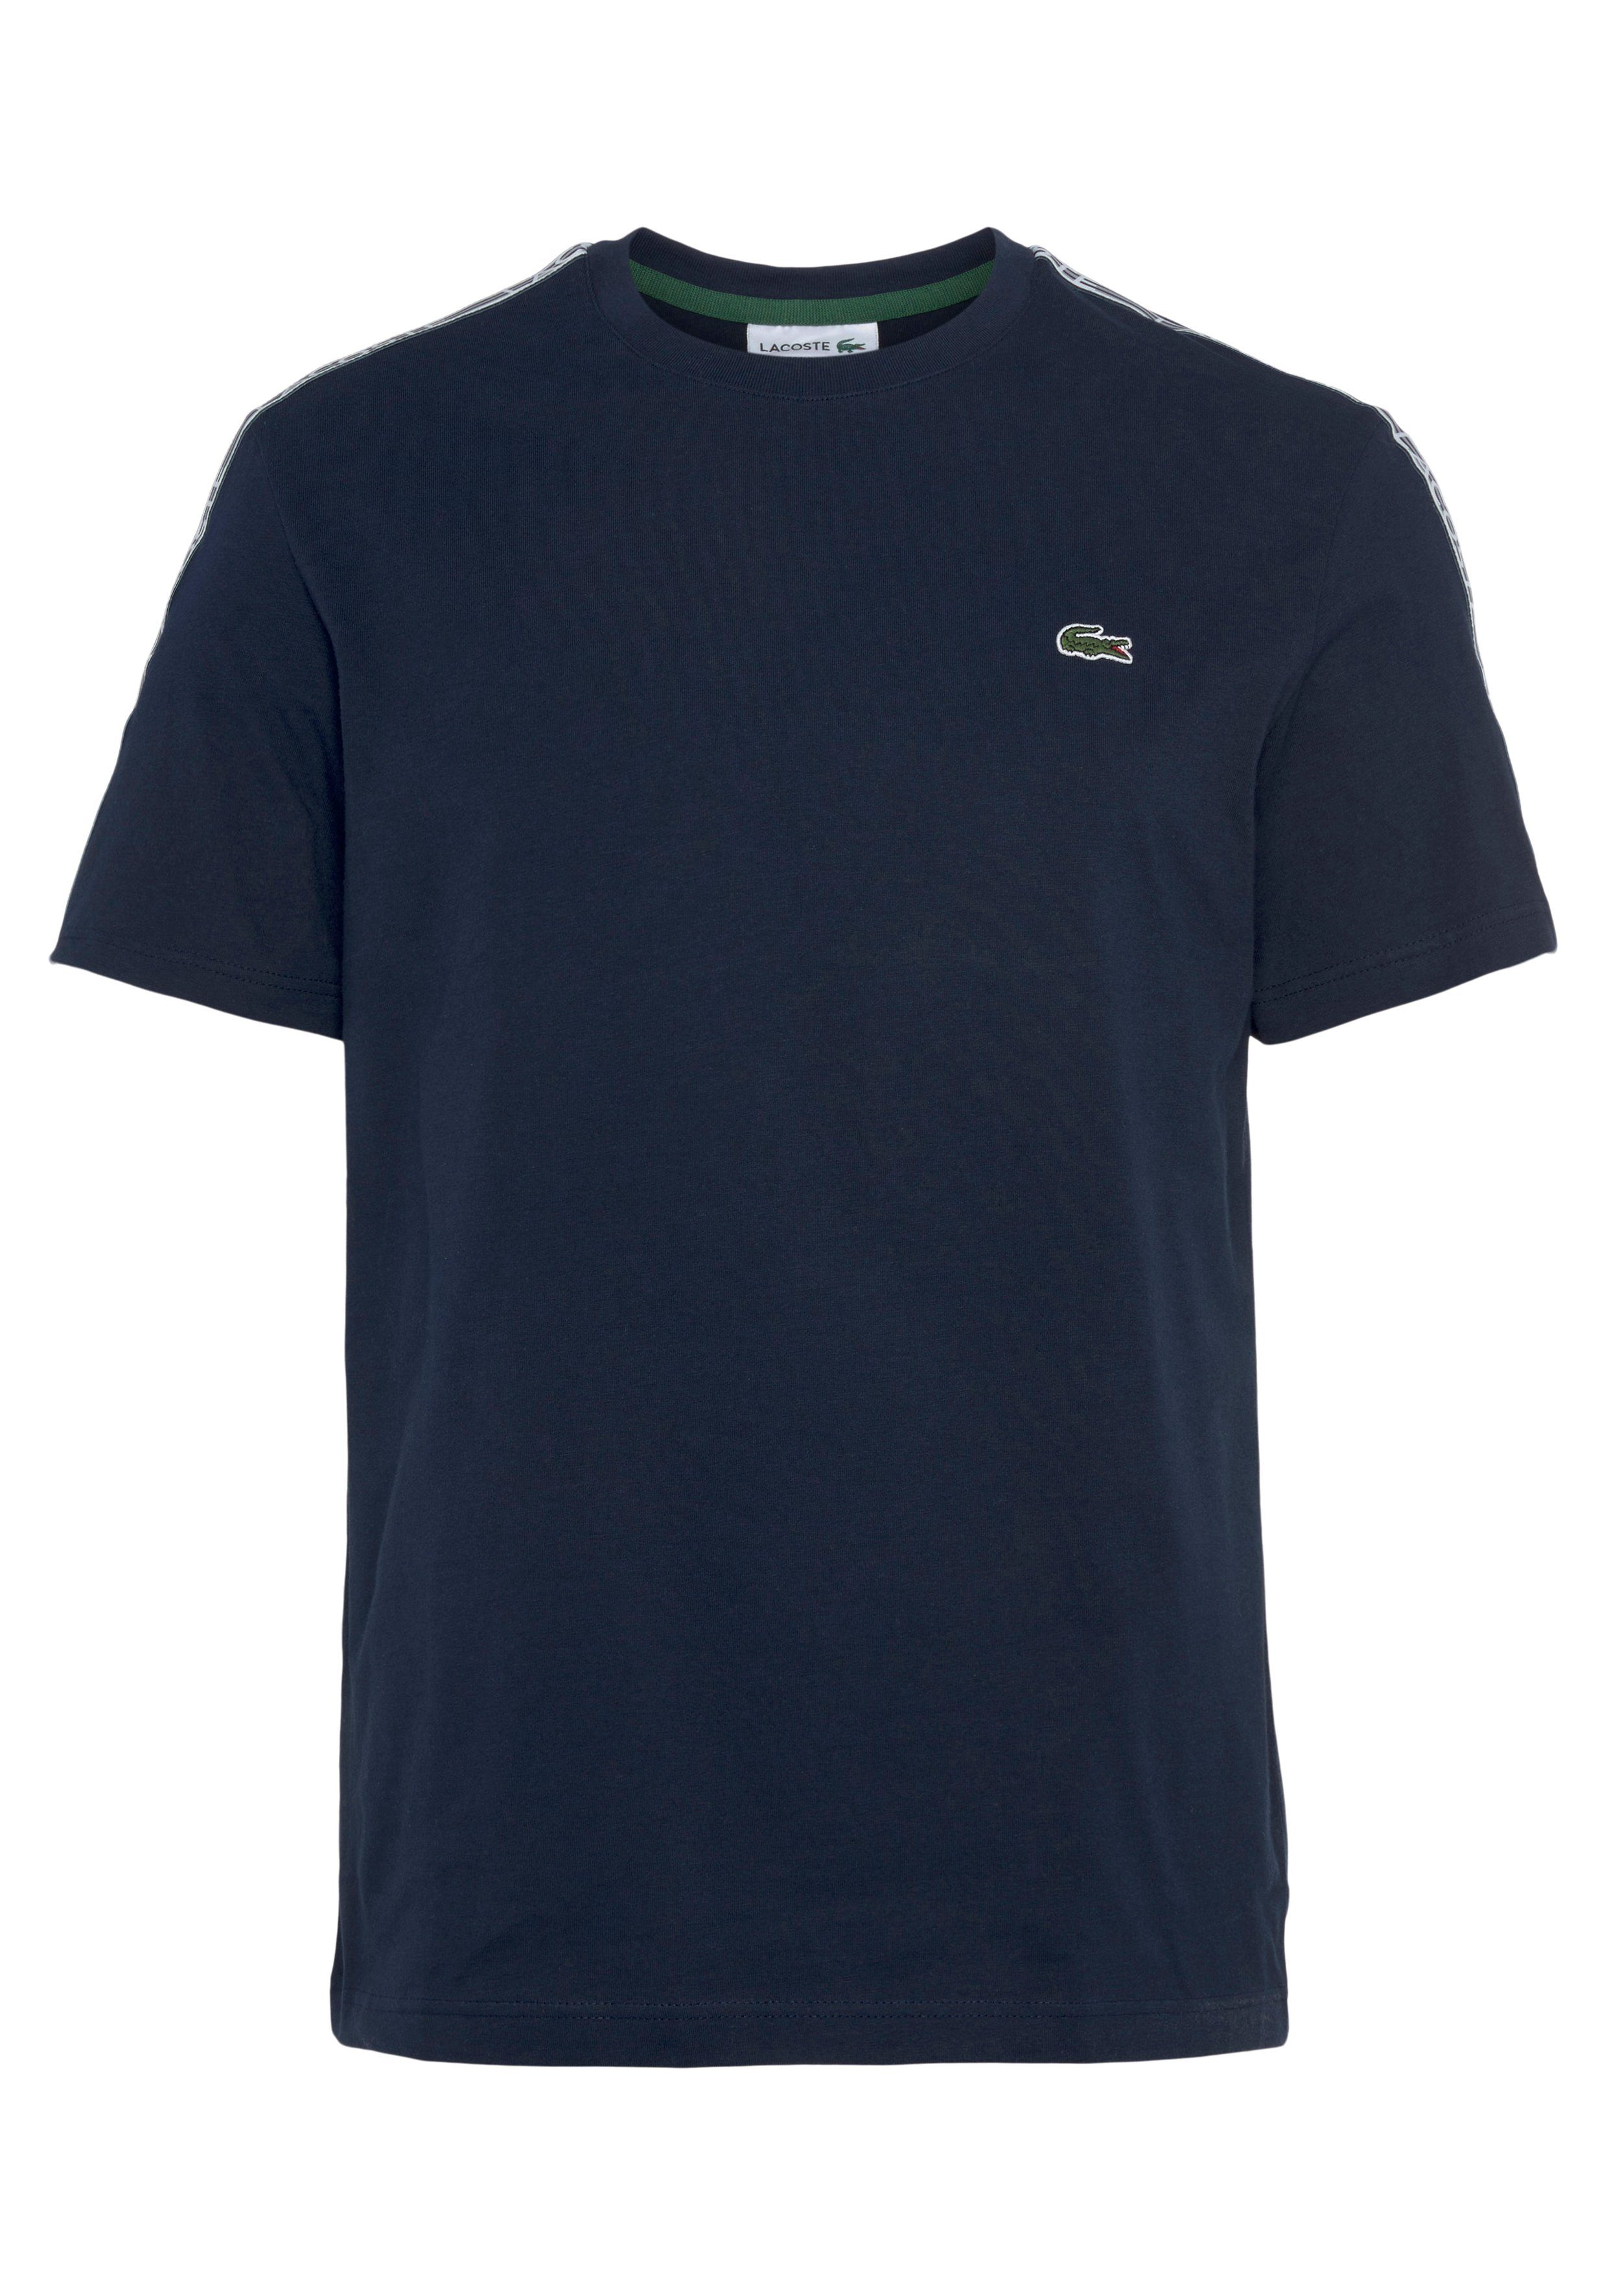 Lacoste T-Shirt mit beschriftetem Kontrastband navy Schultern an blue den